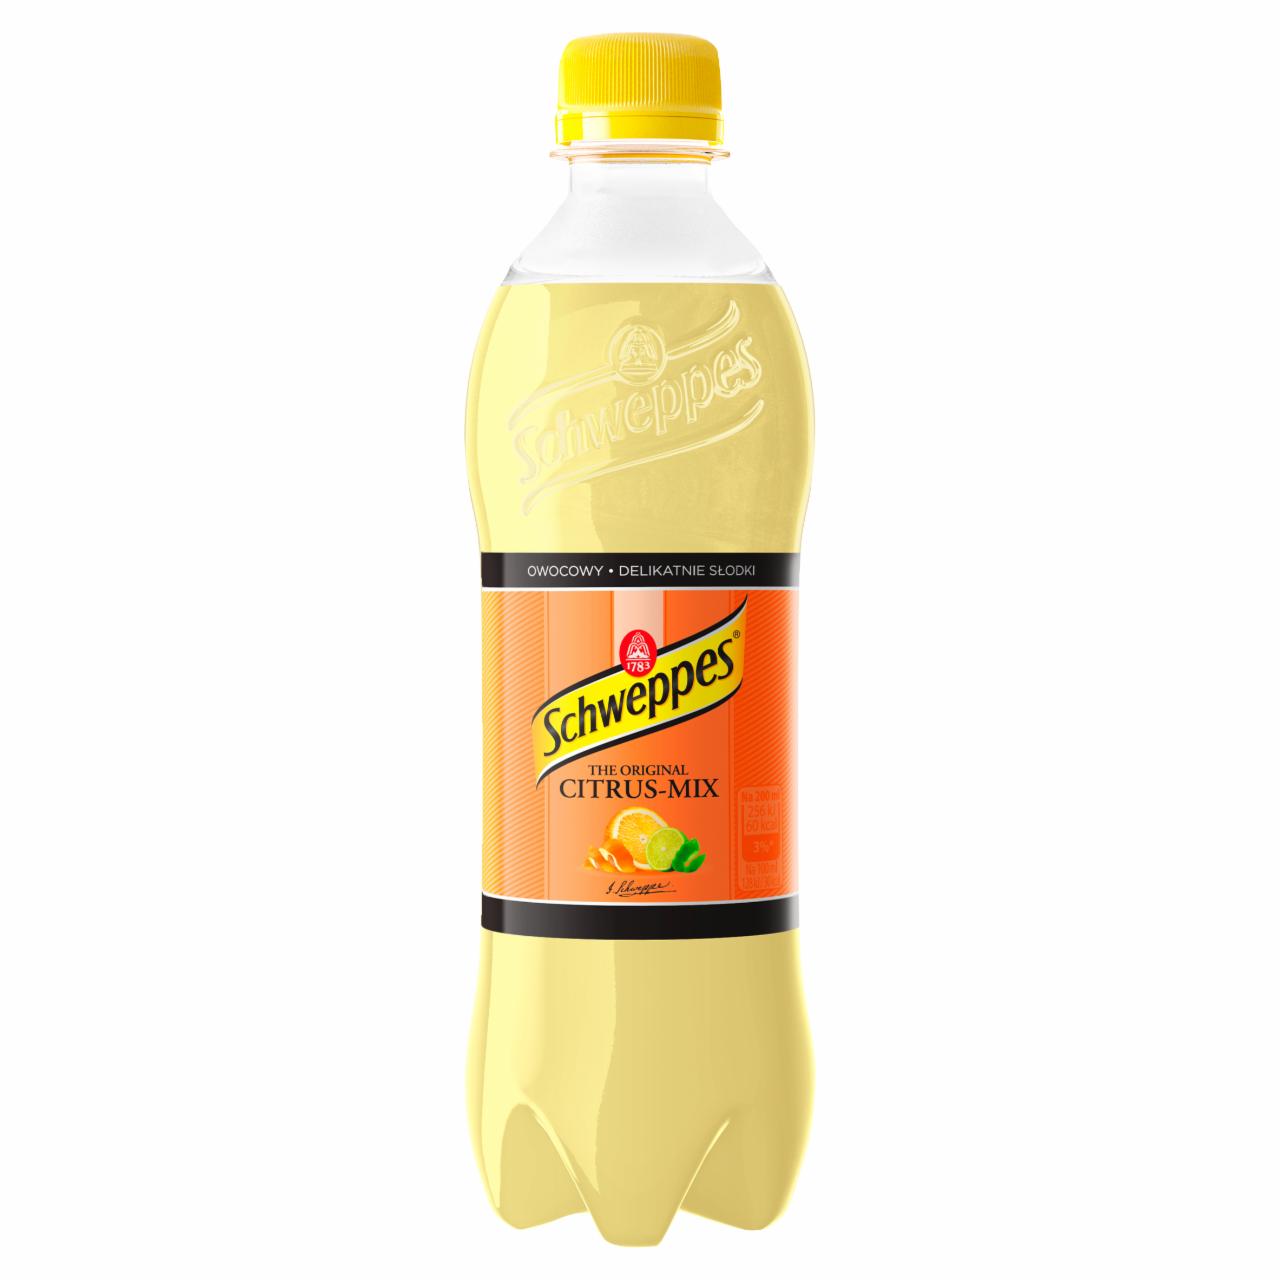 Zdjęcia - Schweppes Citrus-Mix Napój gazowany 0,45 l